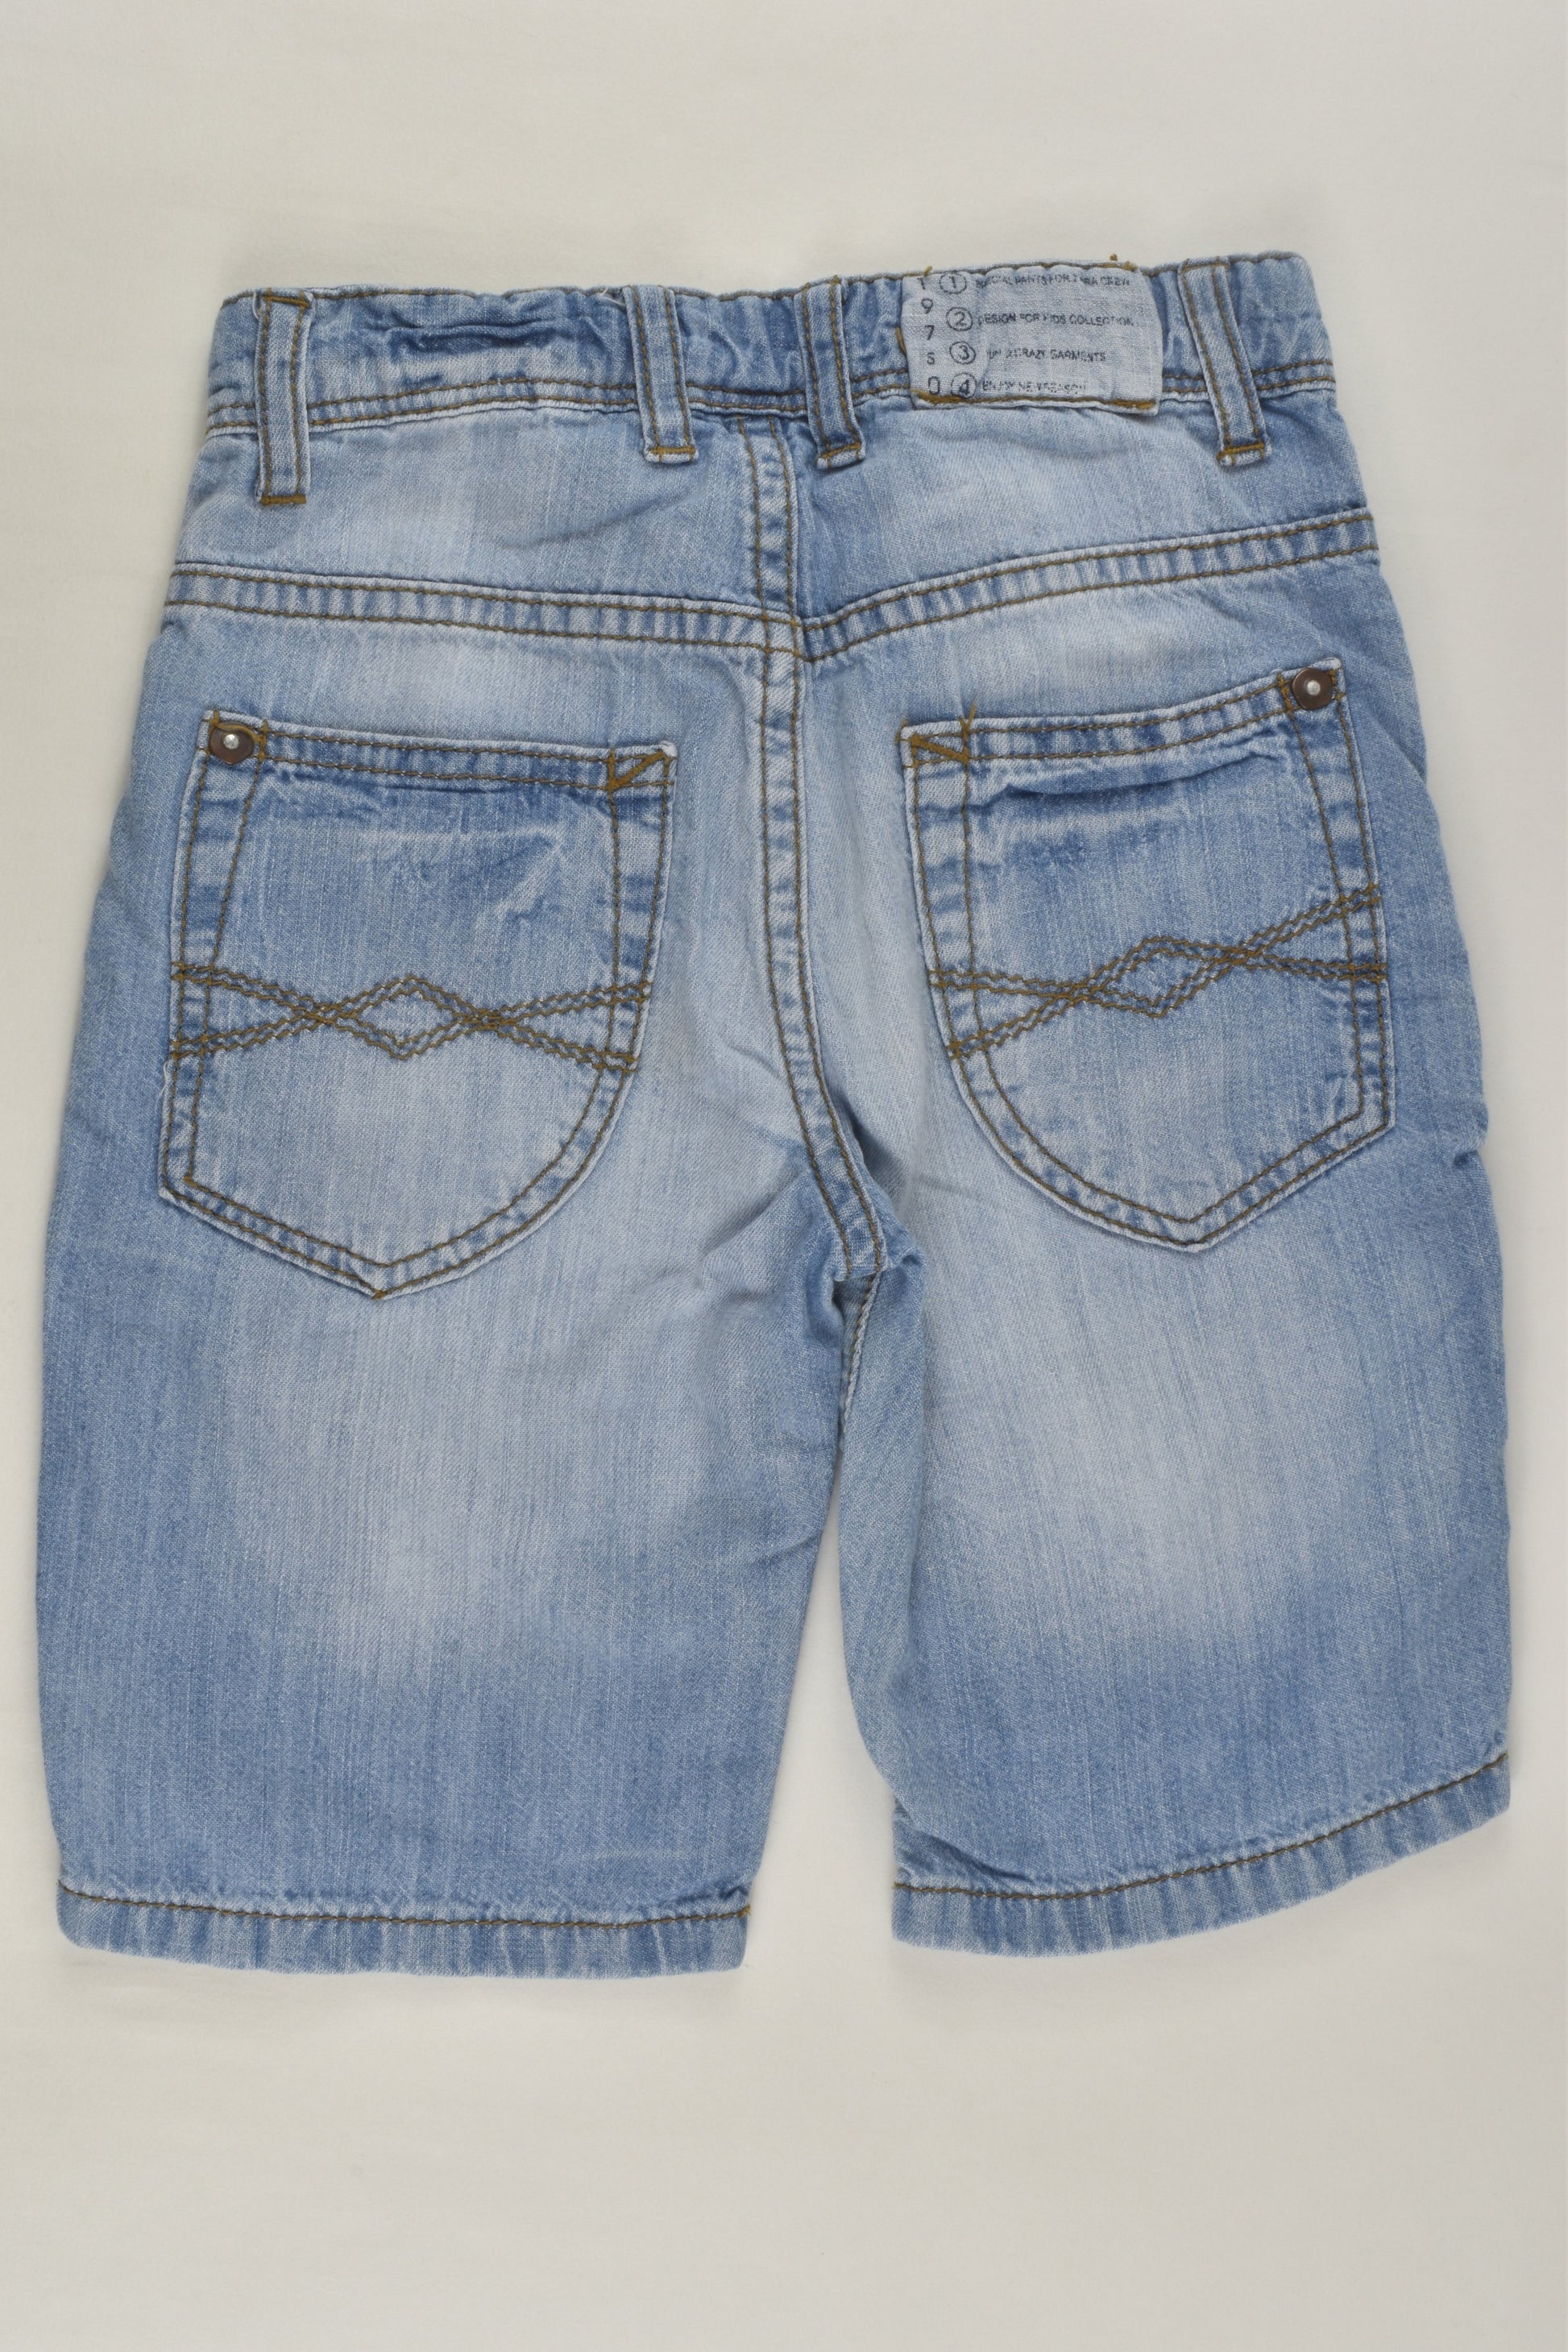 Zara Size 3-4 (104 cm) Lightweight Denim Shorts